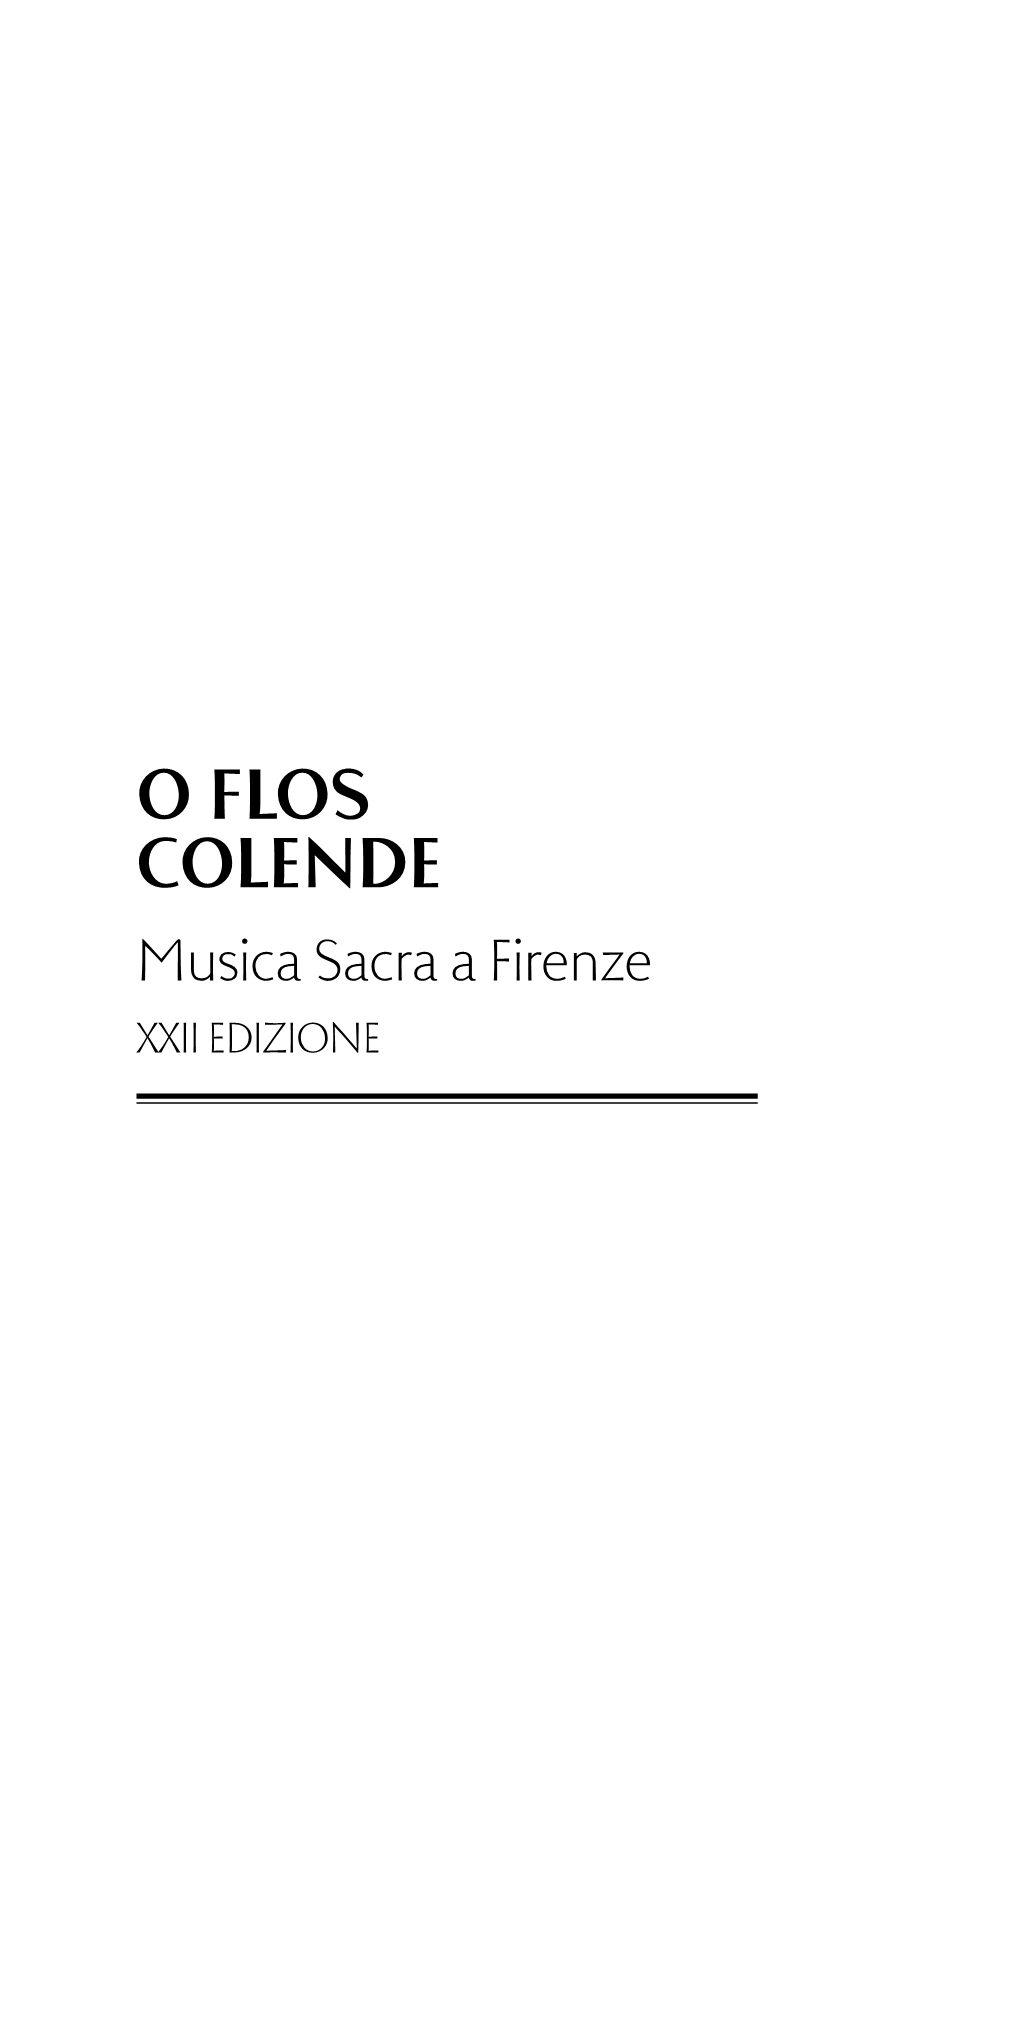 O Flos Colende Musica Sacra a Firenze XXII Edizione È Con Rinnovata Soddisfazione Che L’Opera Di S